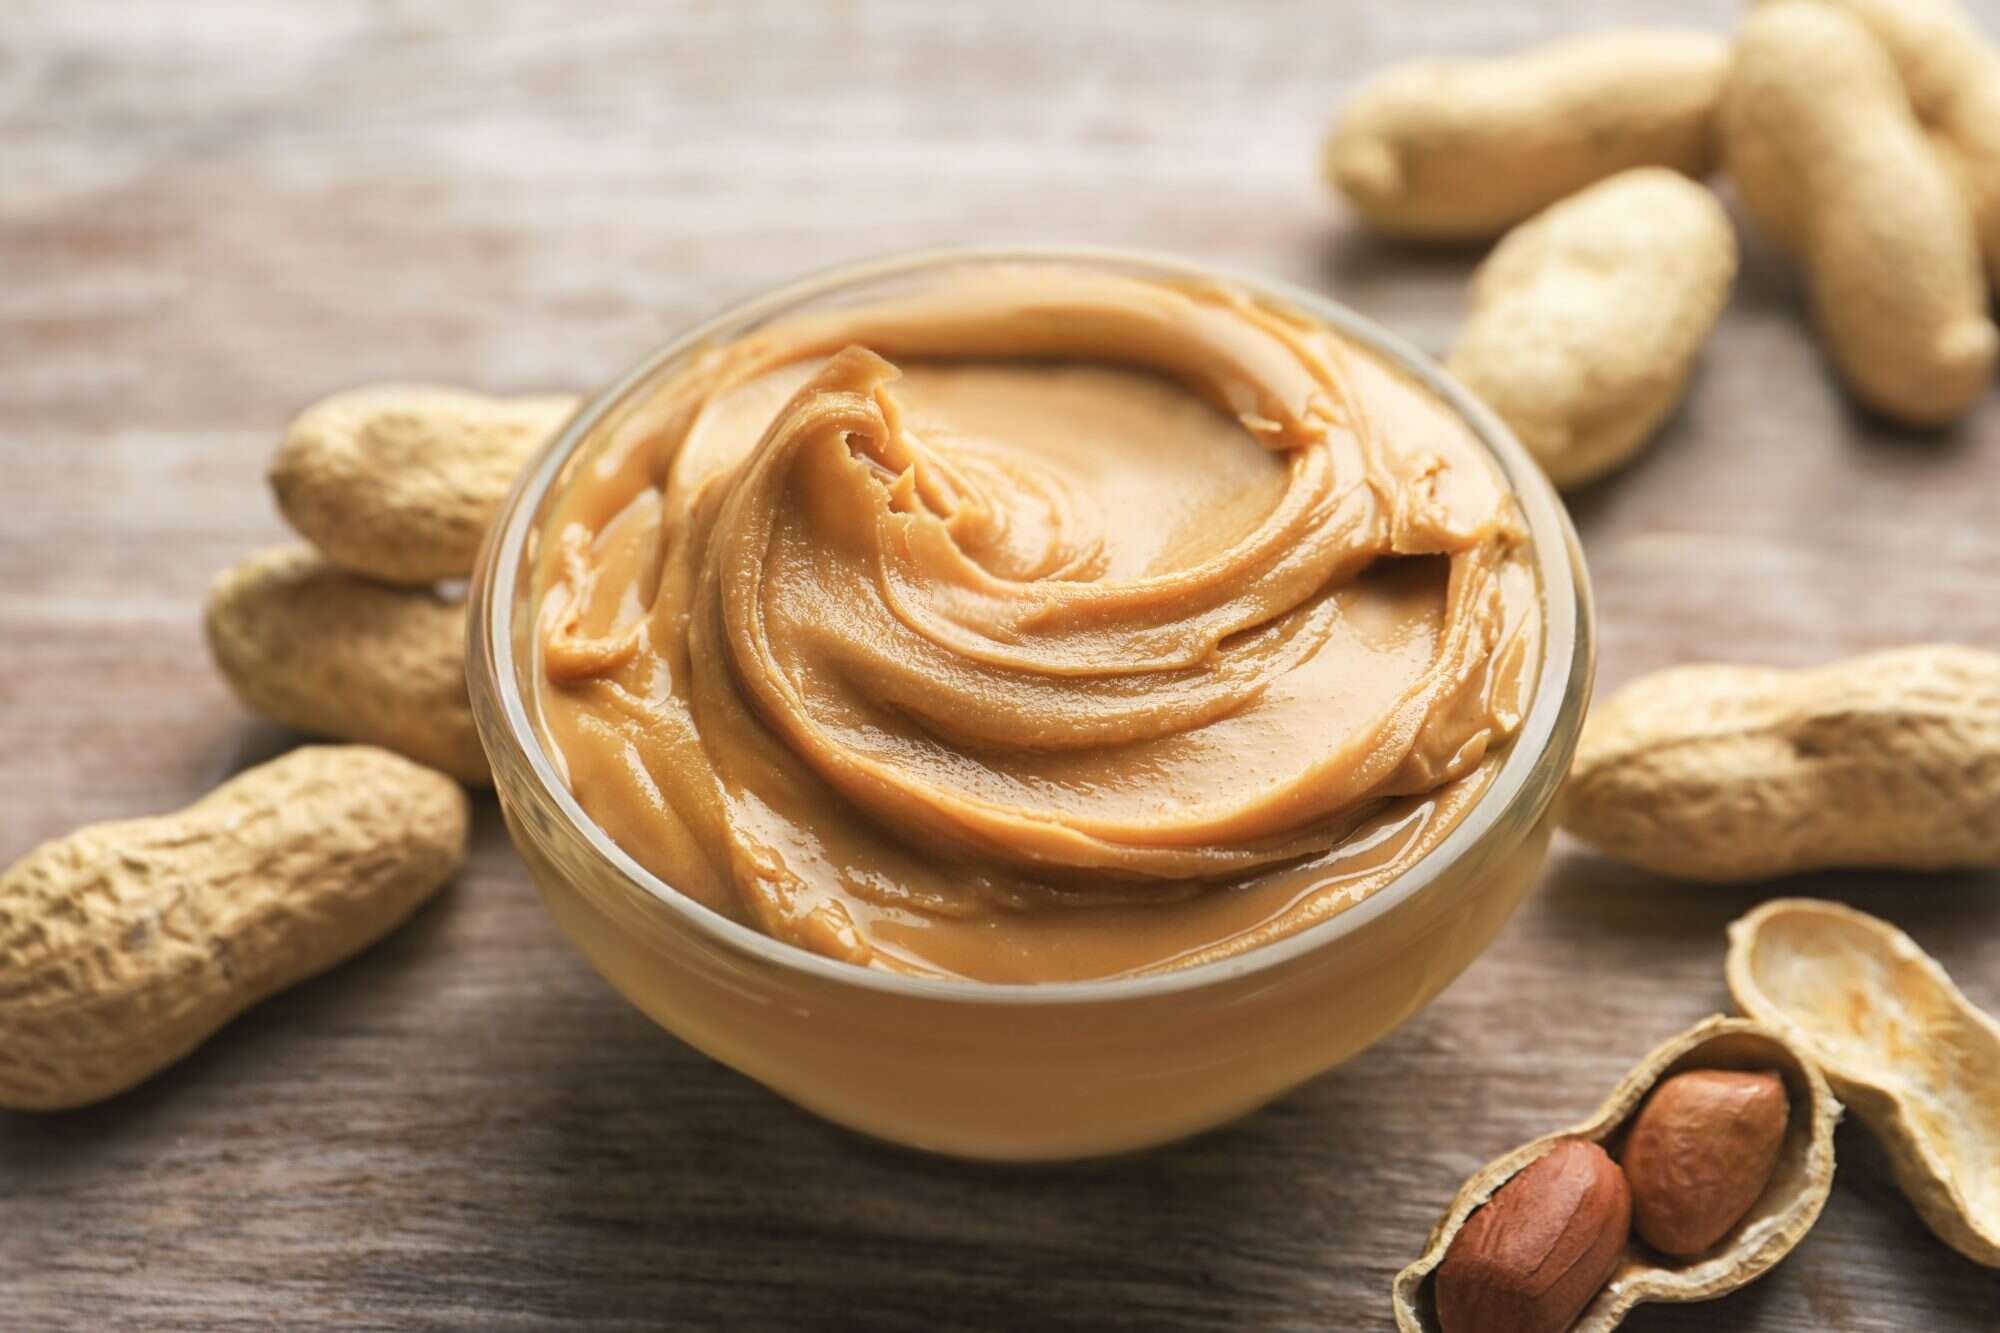 do not refrigerate - peanut butter